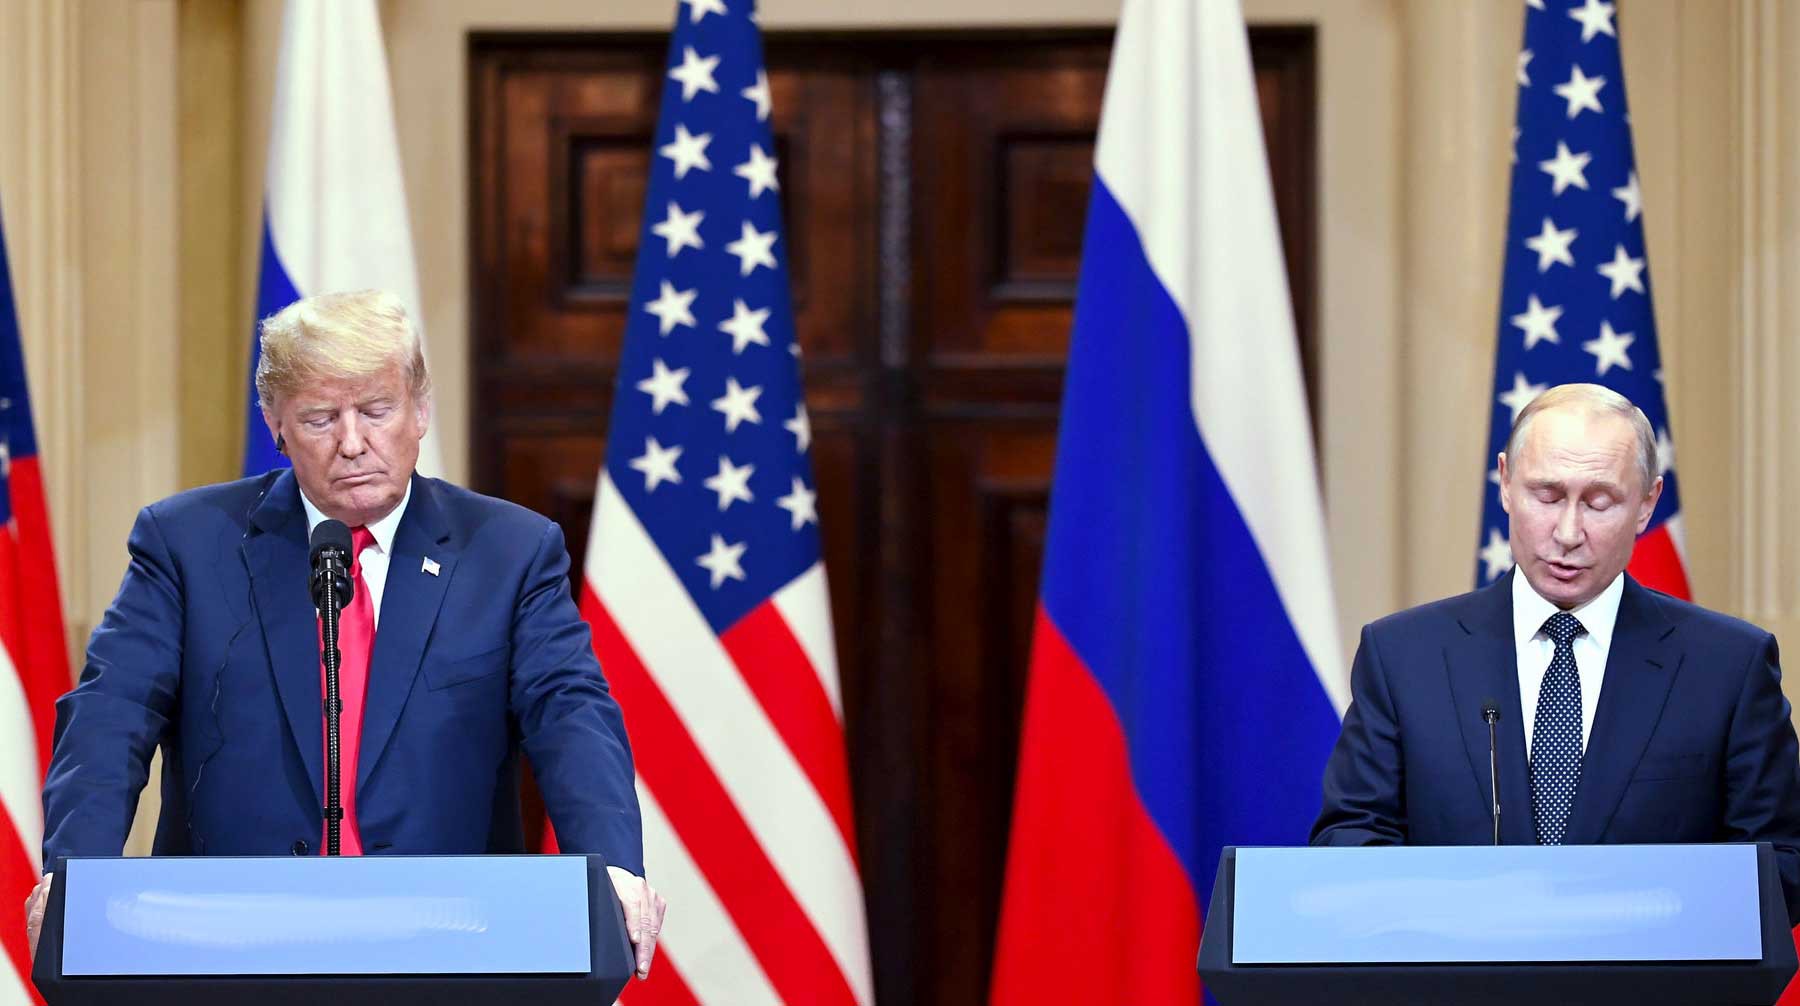 Dailystorm - СМИ: США запросили встречу Трампа с Путиным